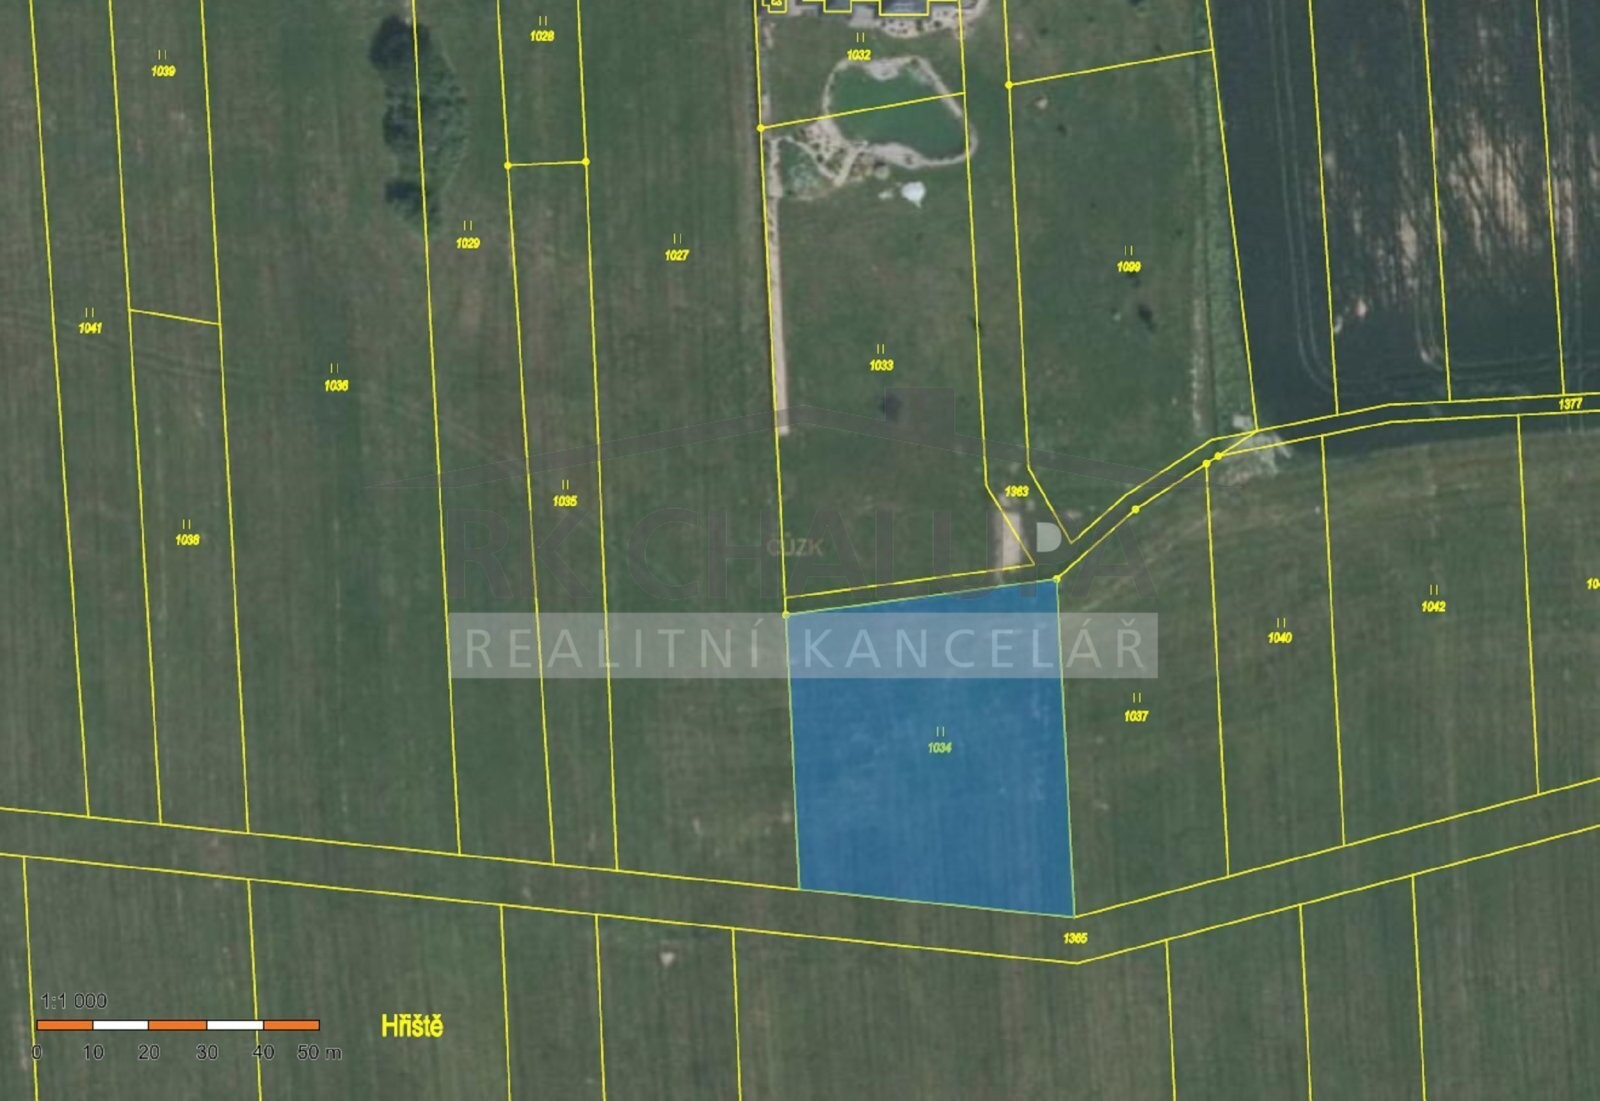 Prodej pozemku v Křenovicích u Dubného, celkem 2.582 m2, v zastavitelném území, budoucí záměr